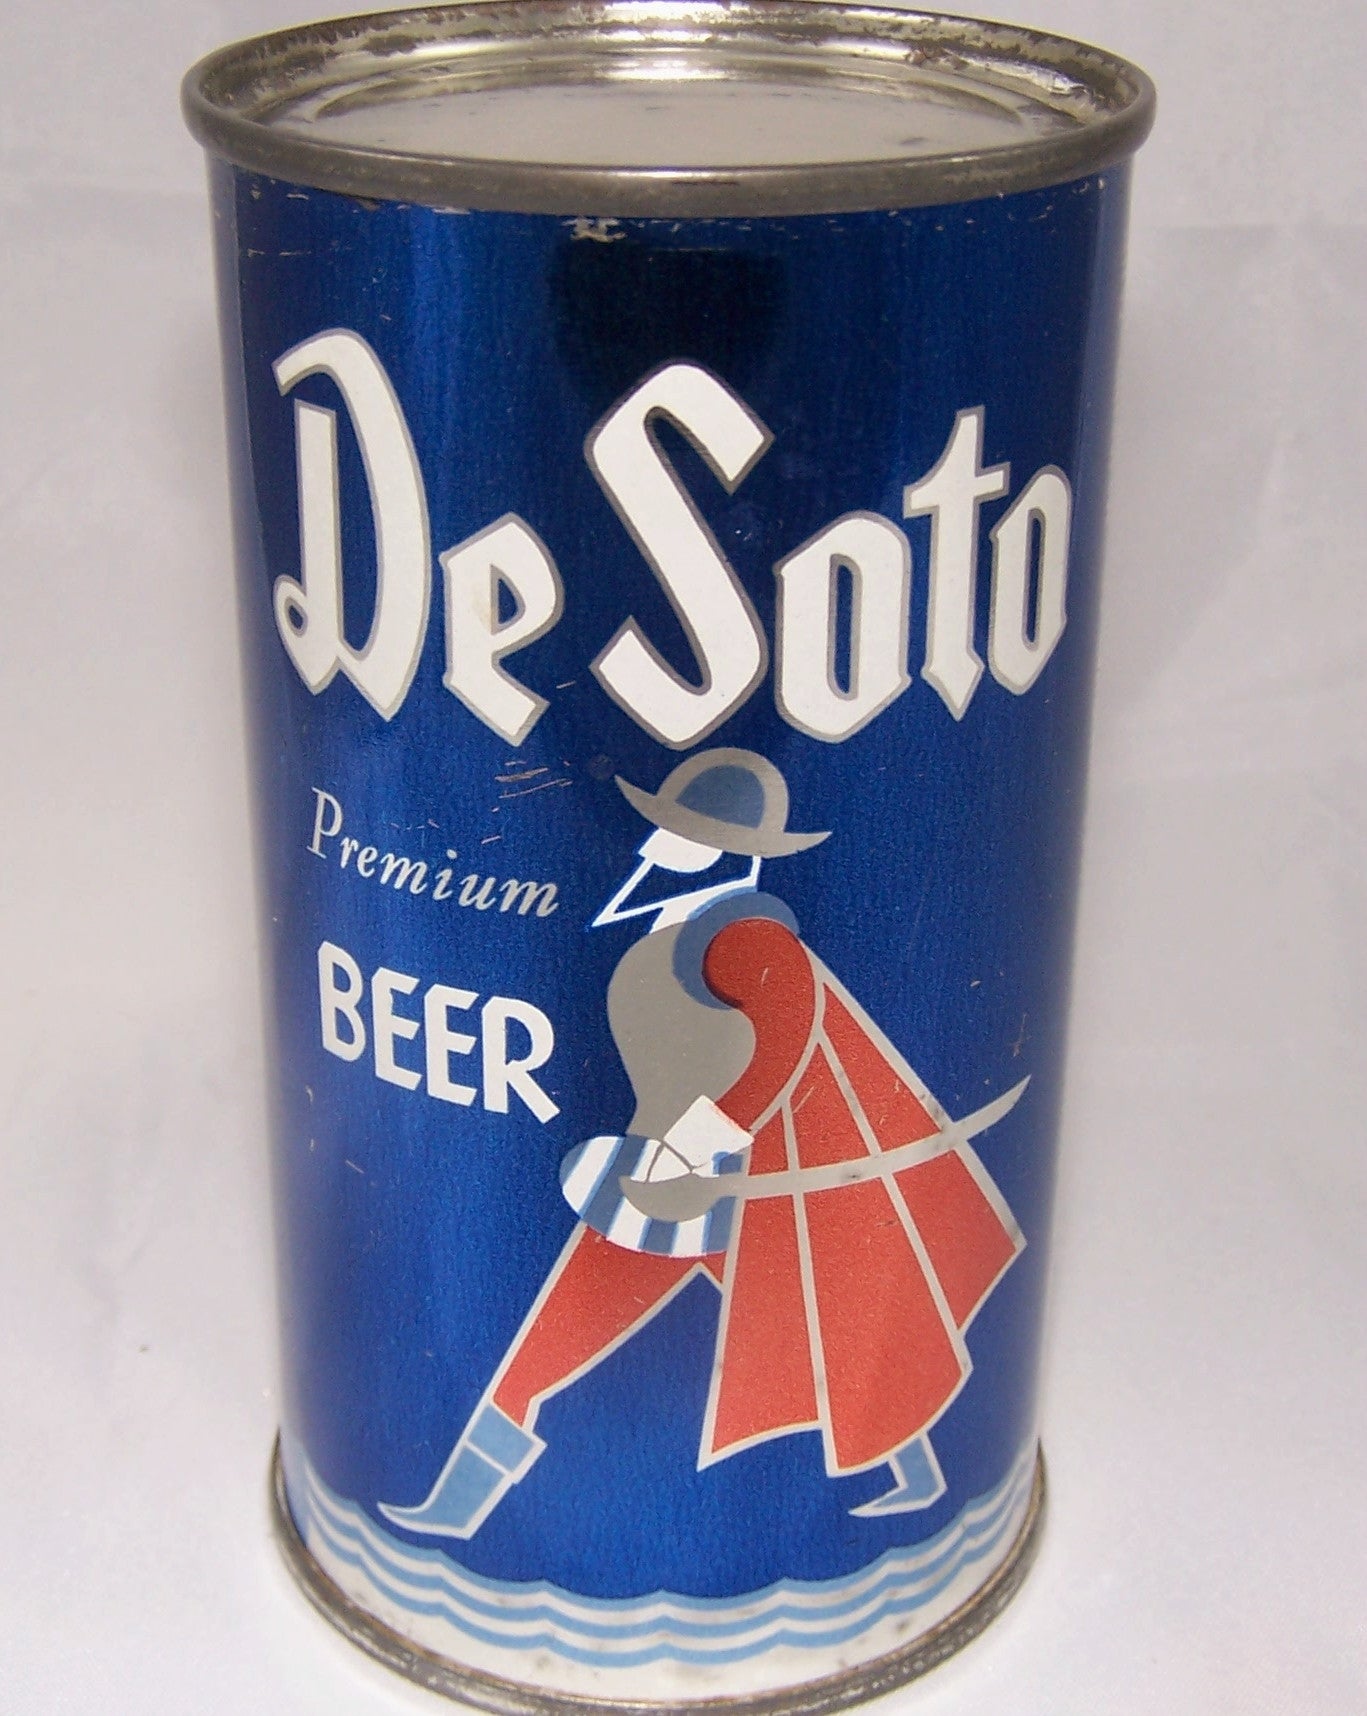 De Soto Premium Beer, USBC 53-28, Grade 1 to 1/1+ Sold on 5/14/15